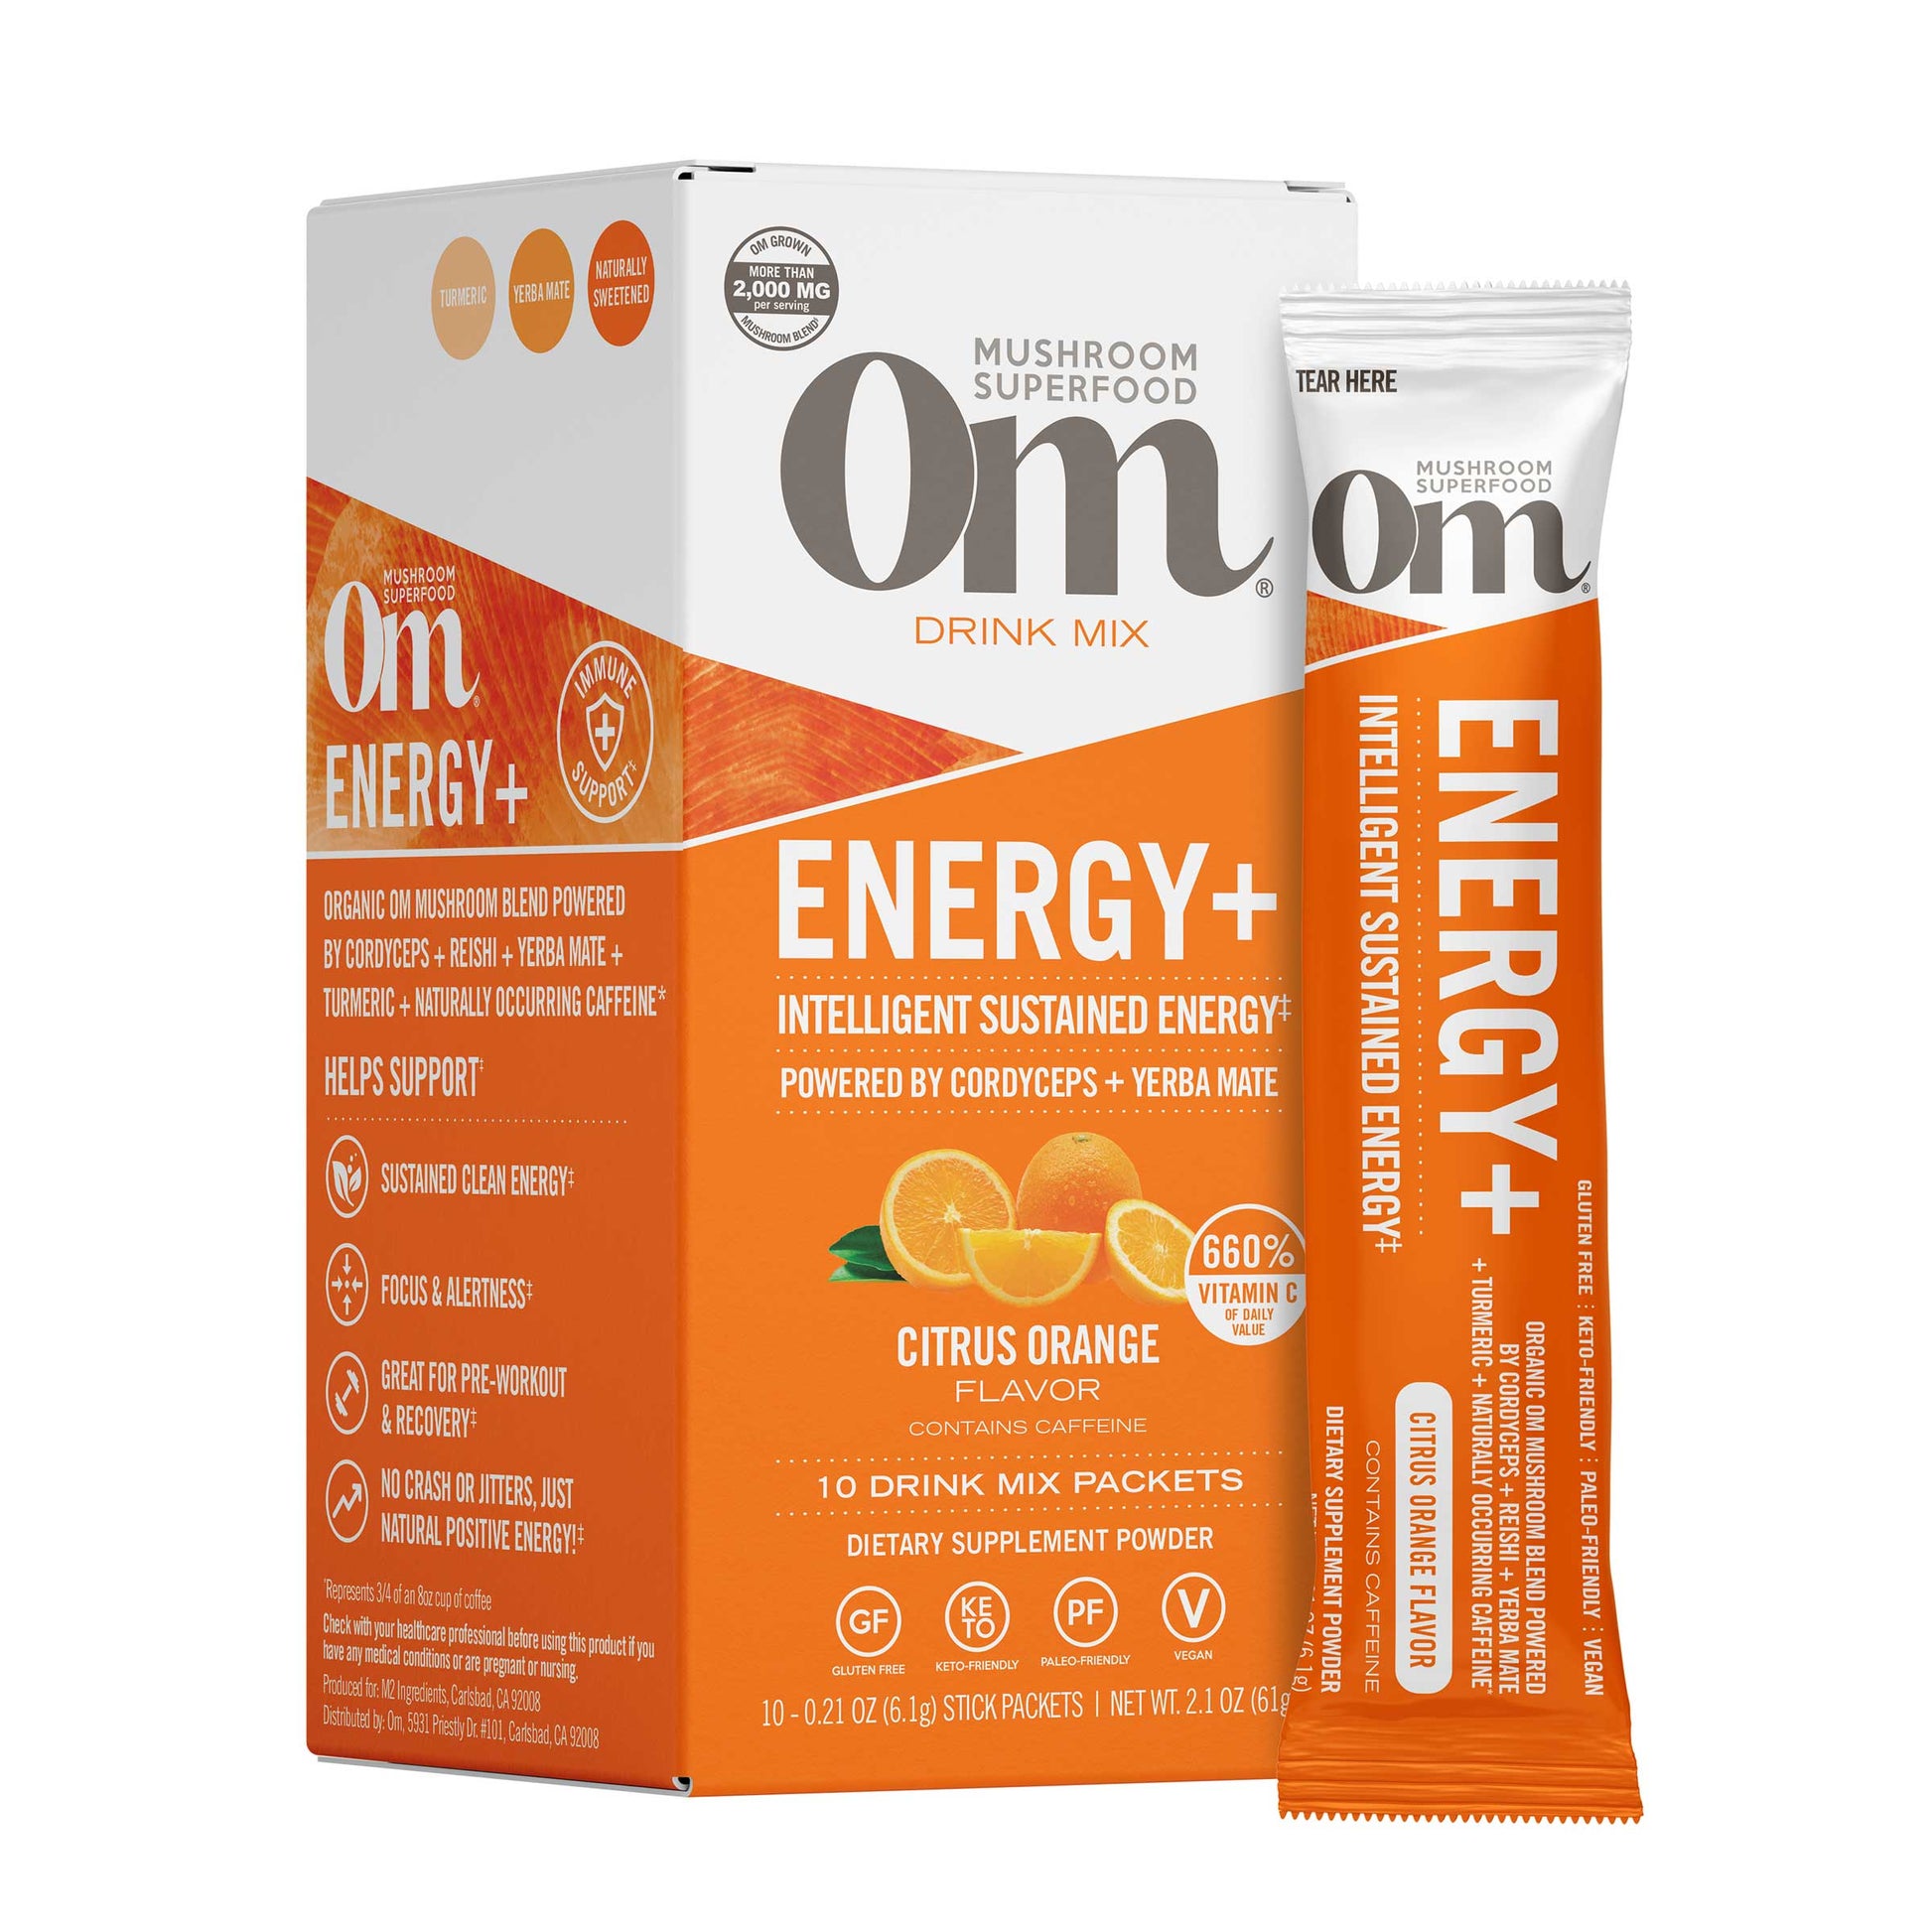 Om Citrus Orange Energy+